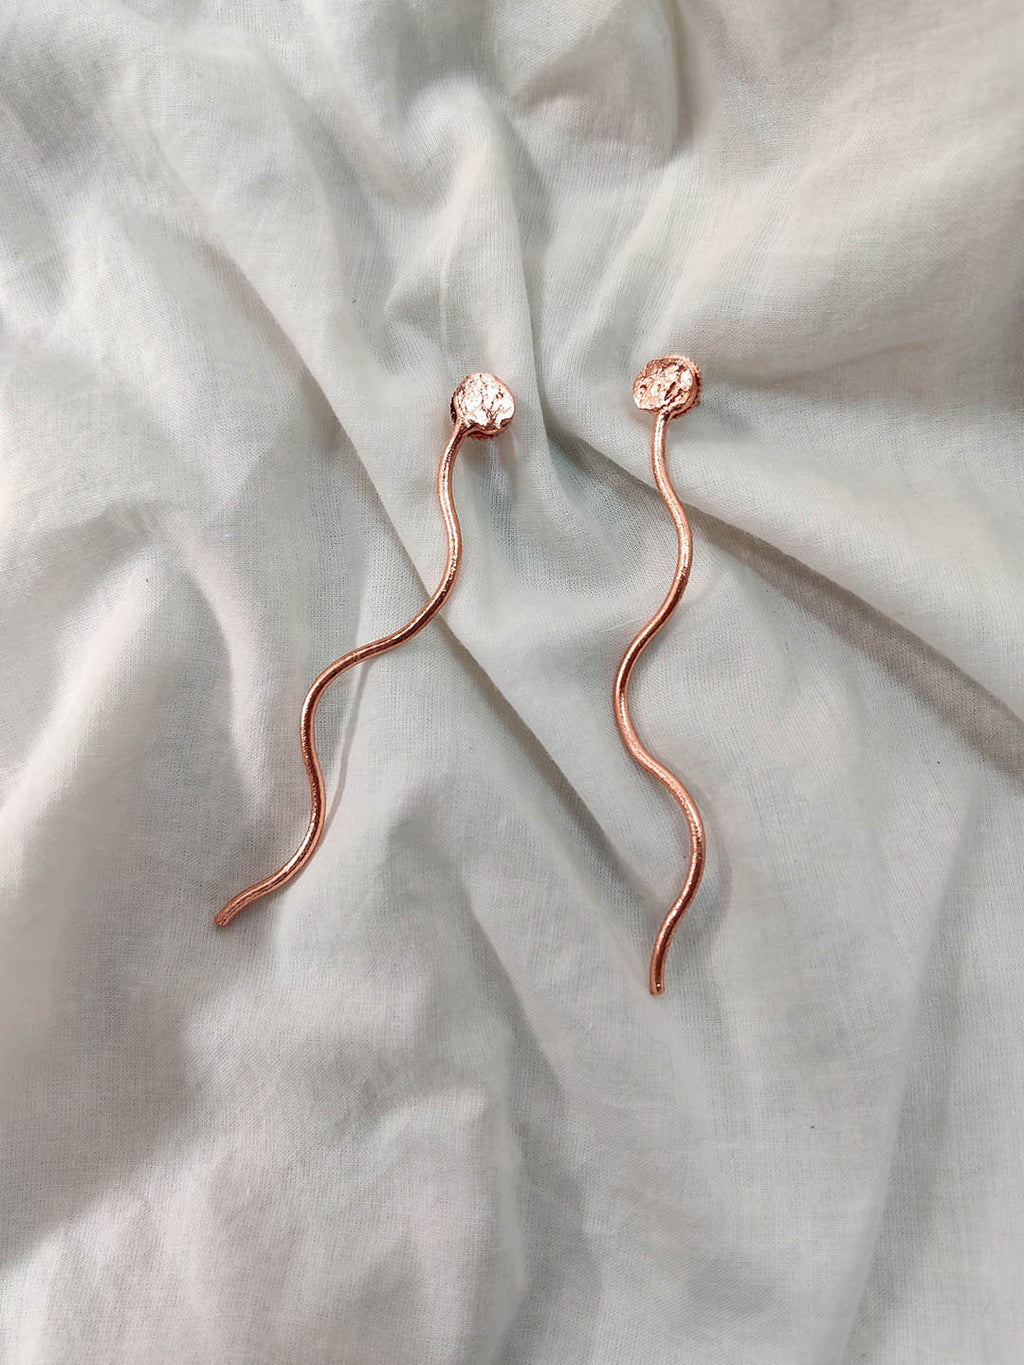 Rose Gold Plated Thread Sticks, Earrings - Shopberserk